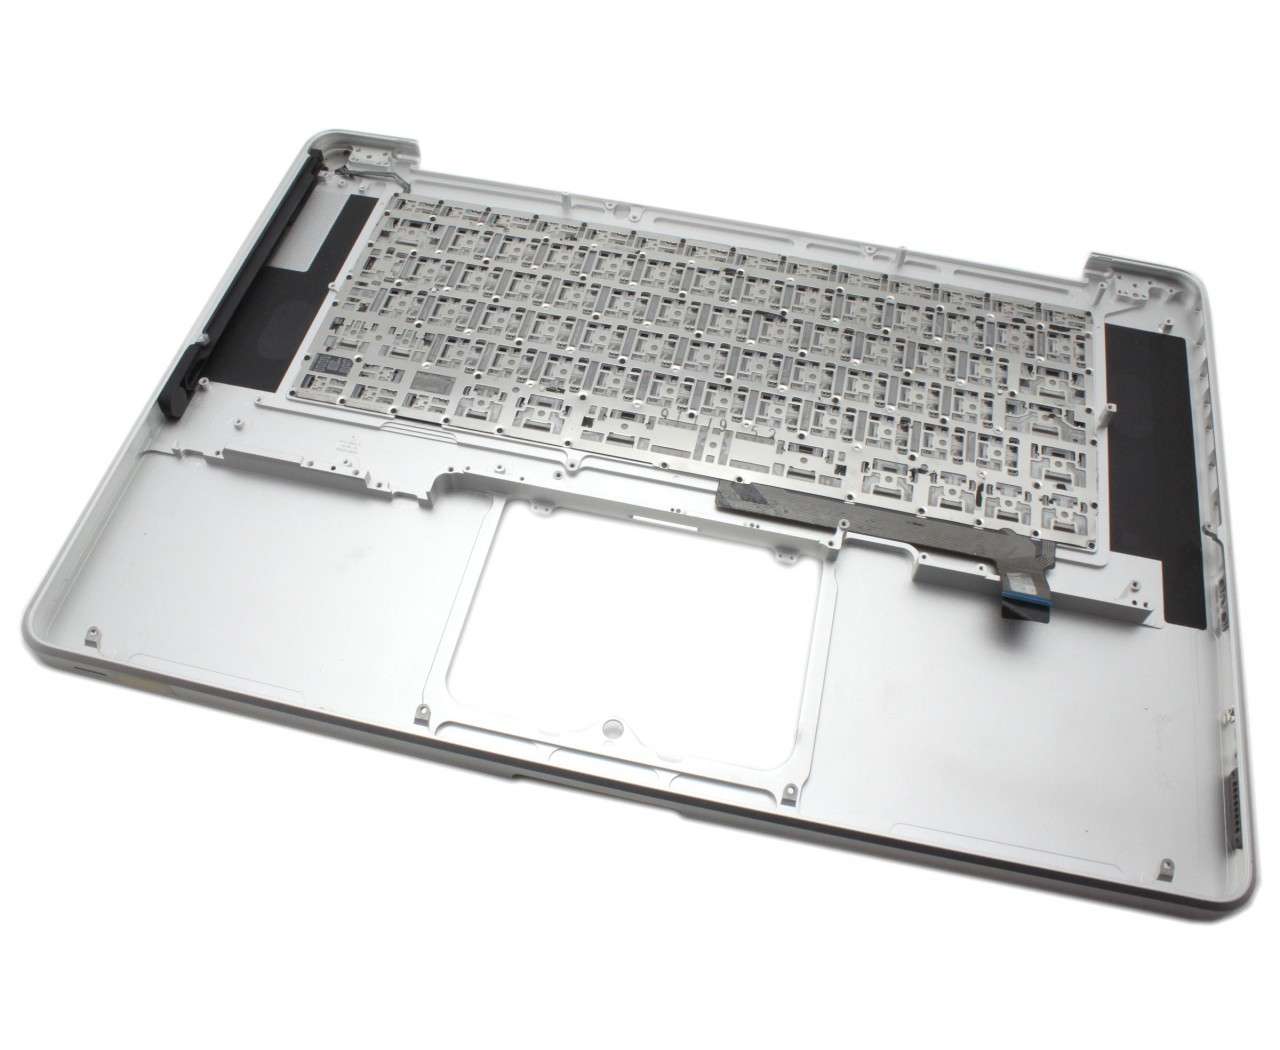 Tastatura Apple MacBook Pro 15 MB471 Neagra cu Palmrest Argintiu Refurbished Apple Apple